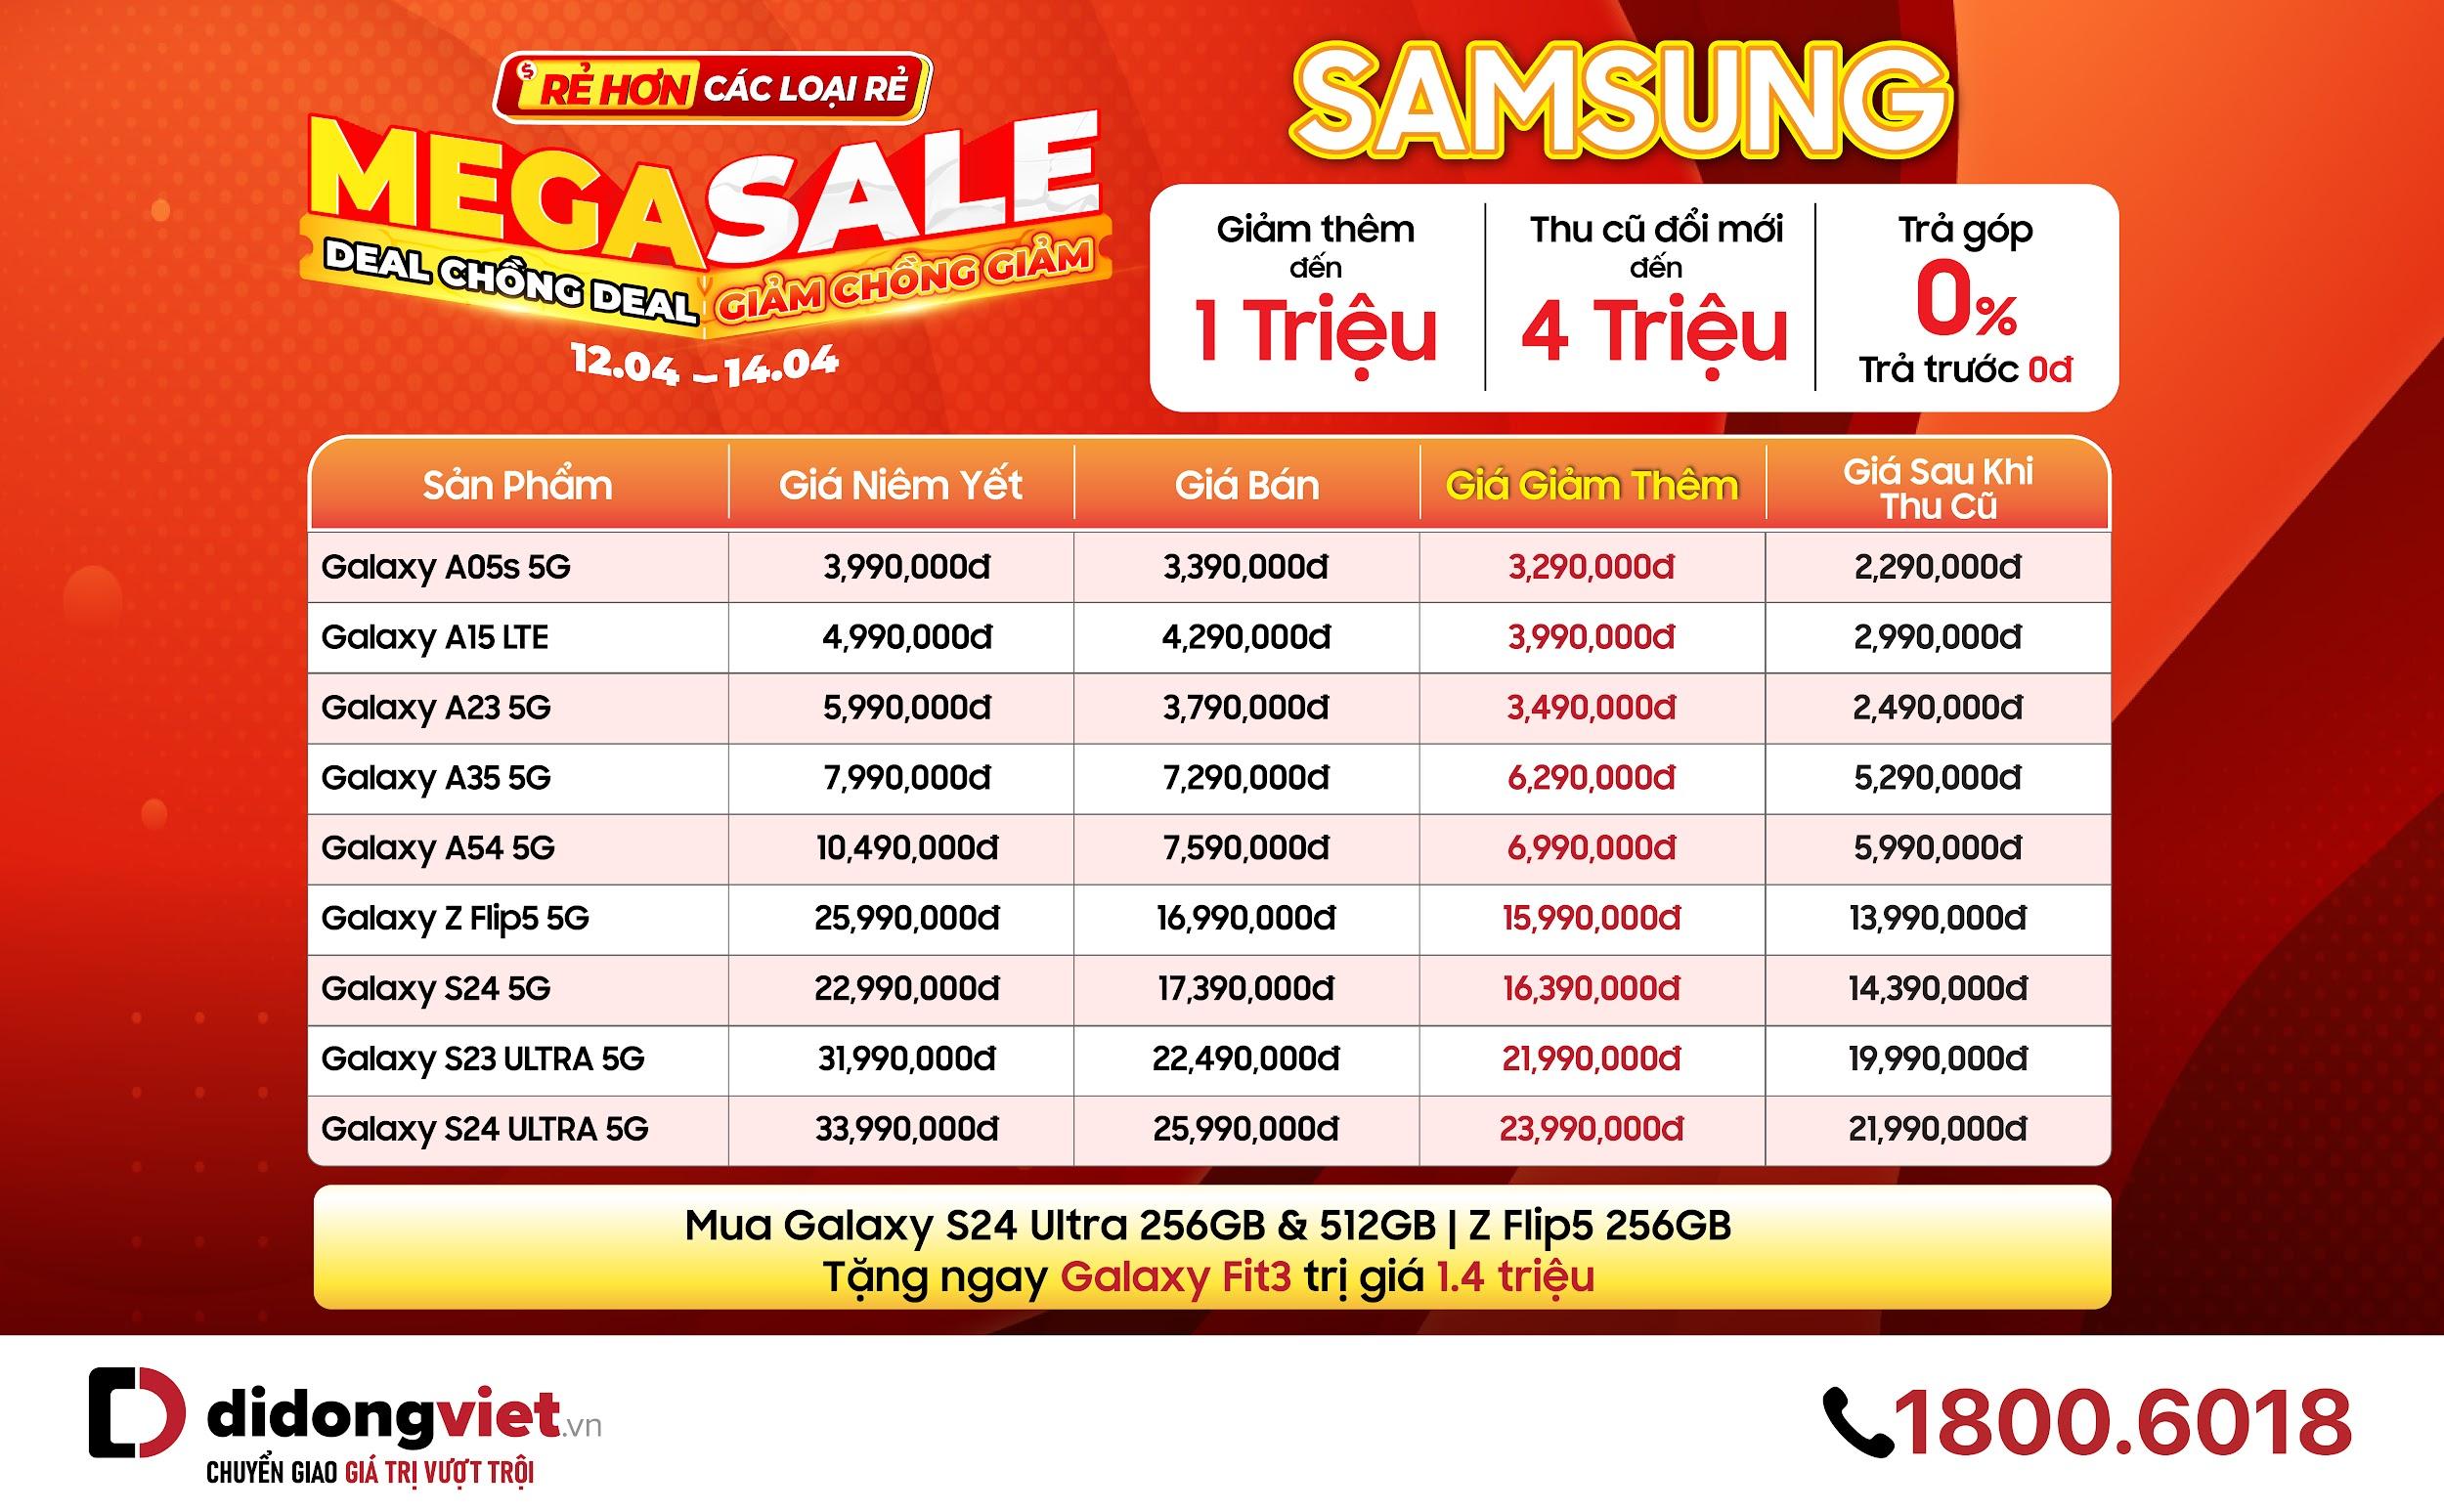 Bảng giá giảm chồng giảm của nhiều điện thoại Samsung trong đợt Mega Sale.